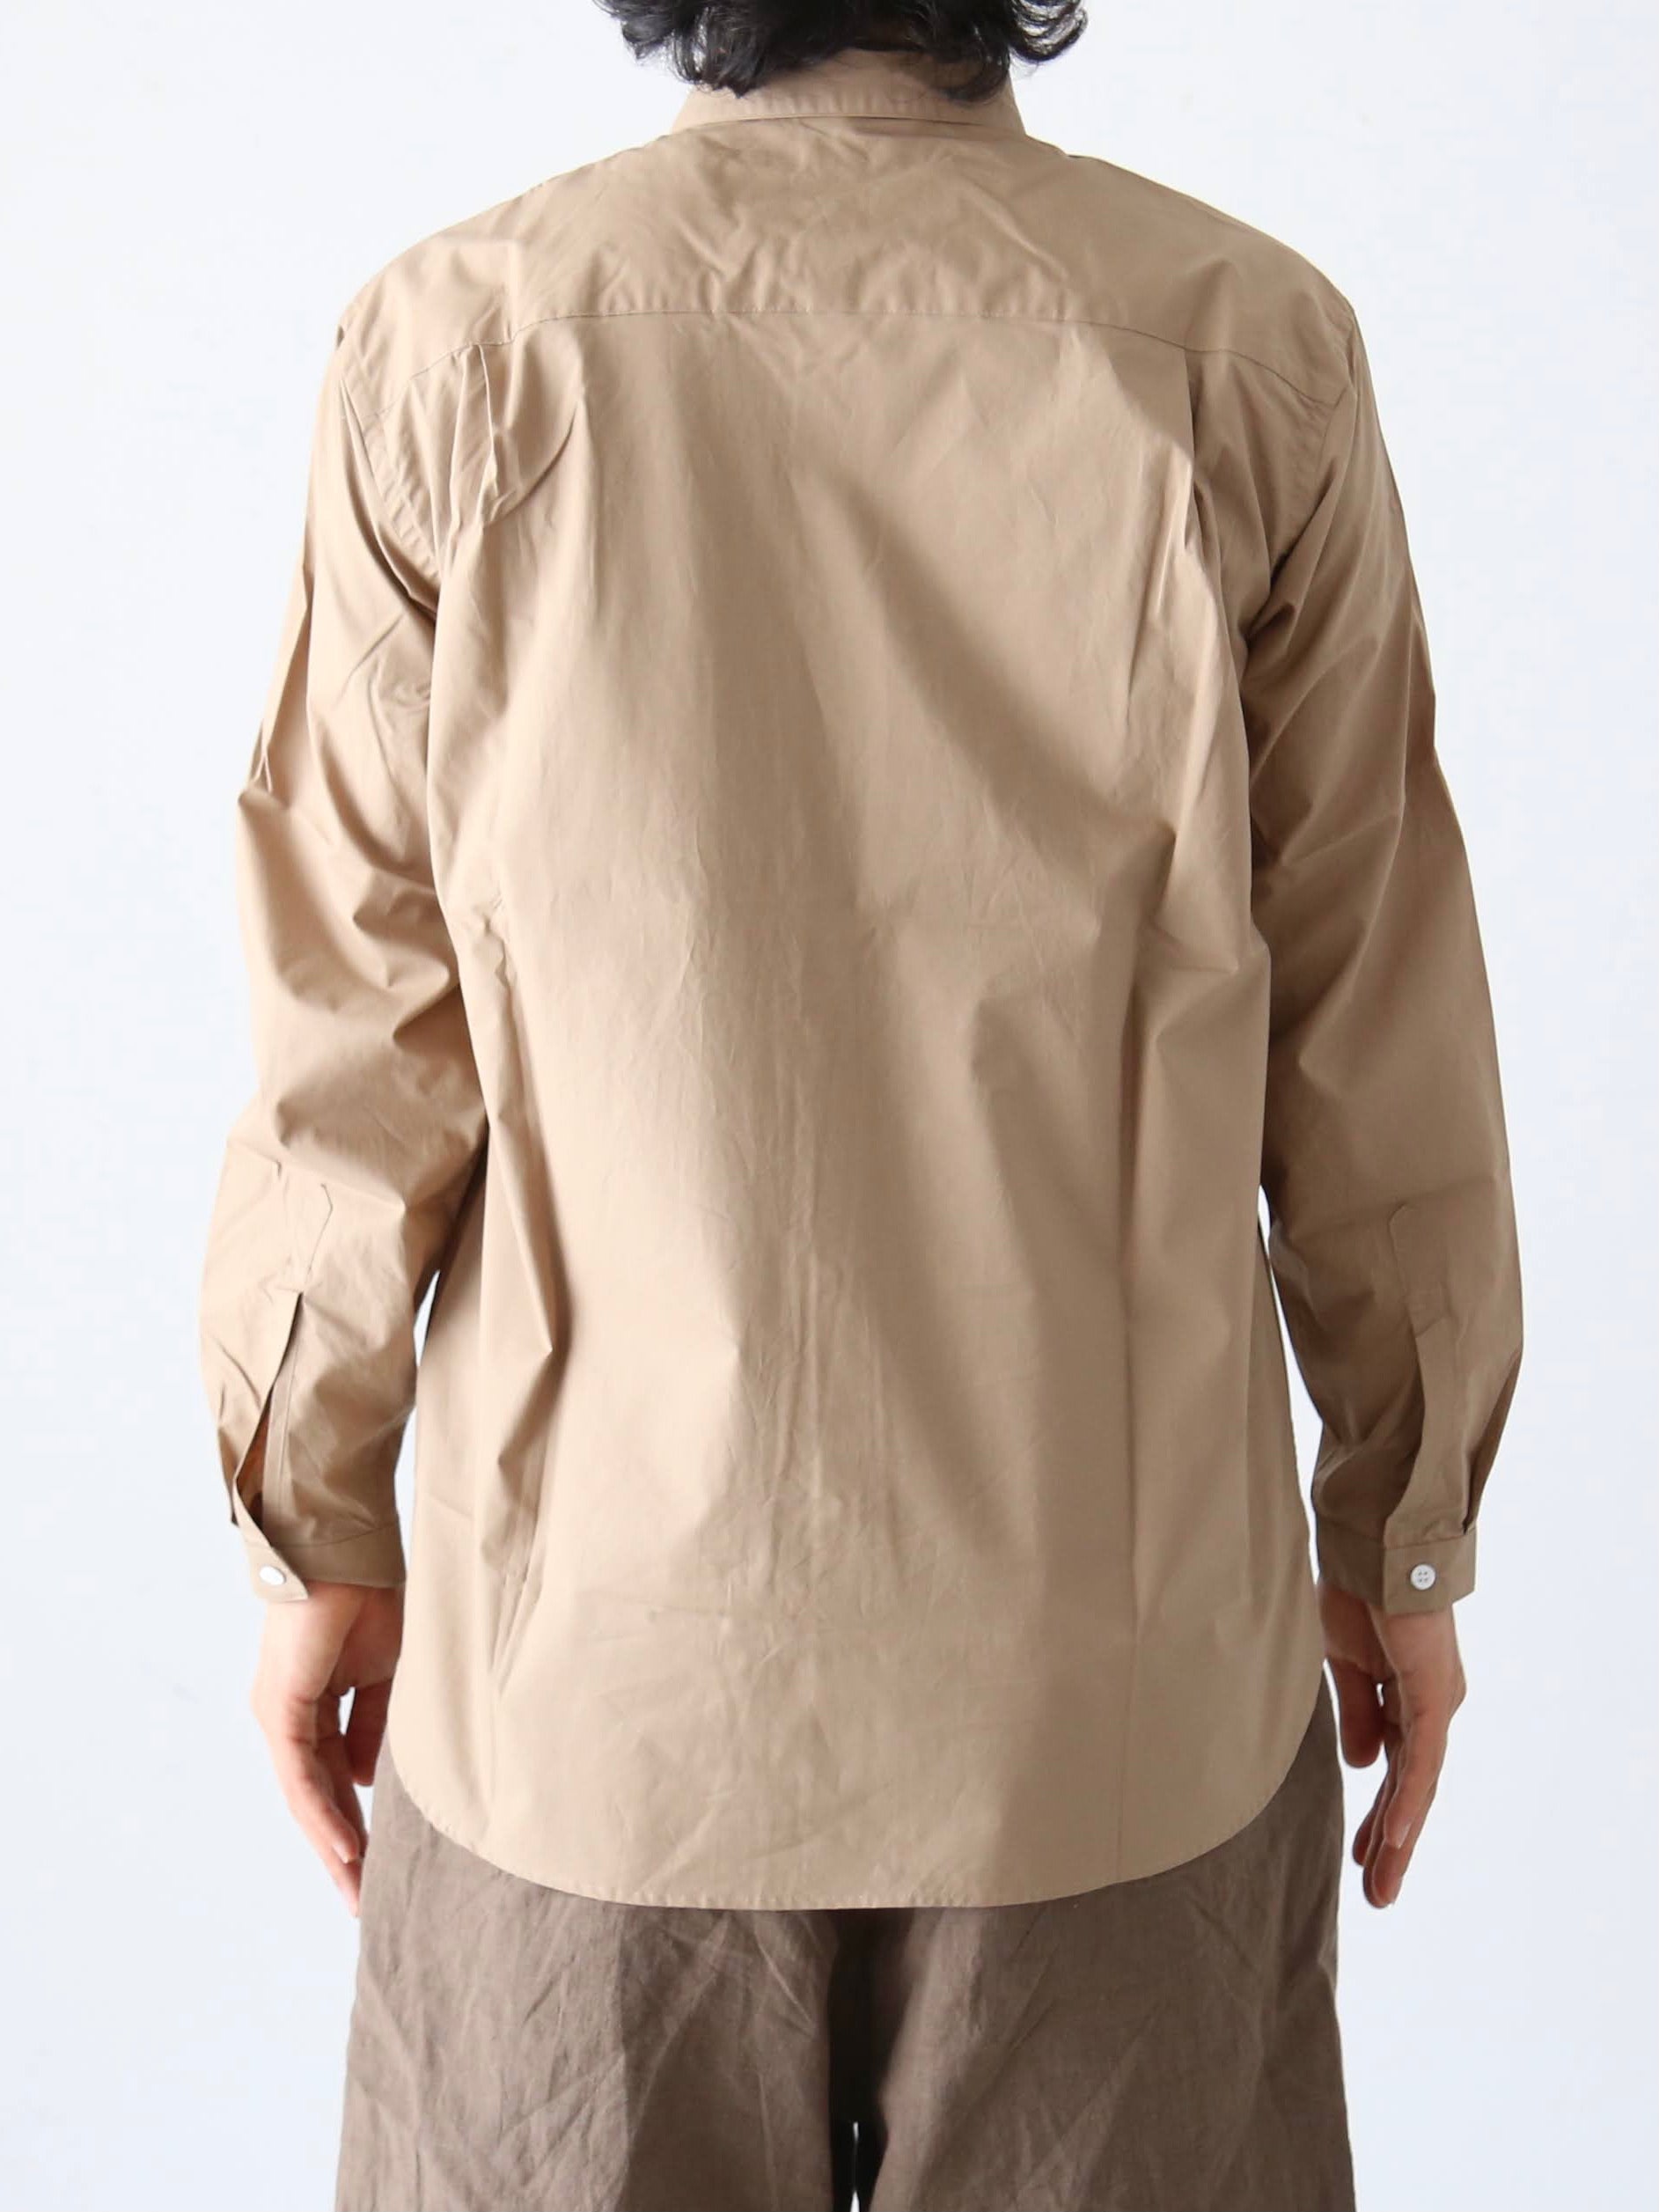 OLDMAN'S TAILOR スモールボタンダウンカラーシャツ [OMT-AW374] – CREER